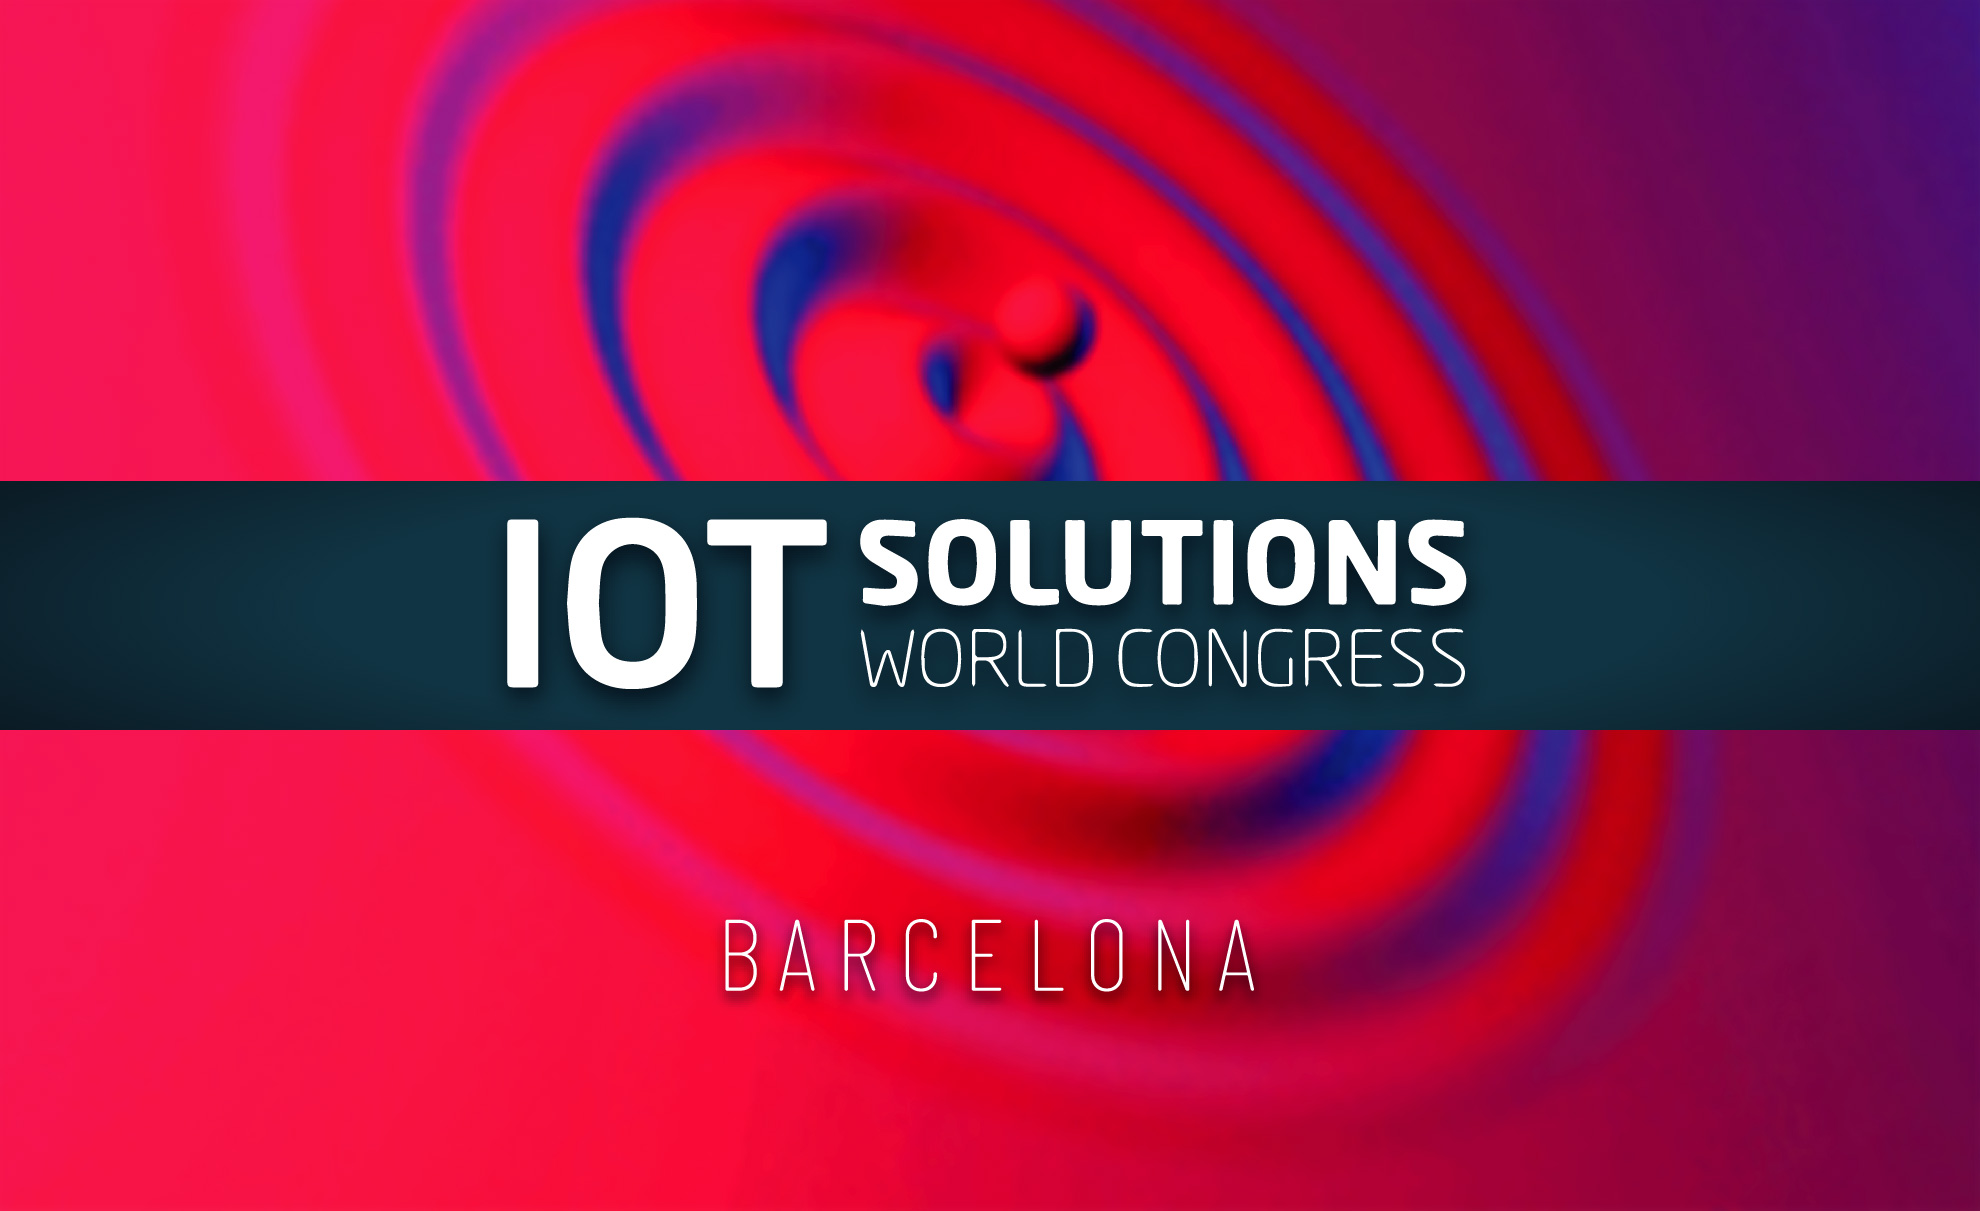 All’IOT Solutions World Congress di Barcellona le nostre ultime novità.